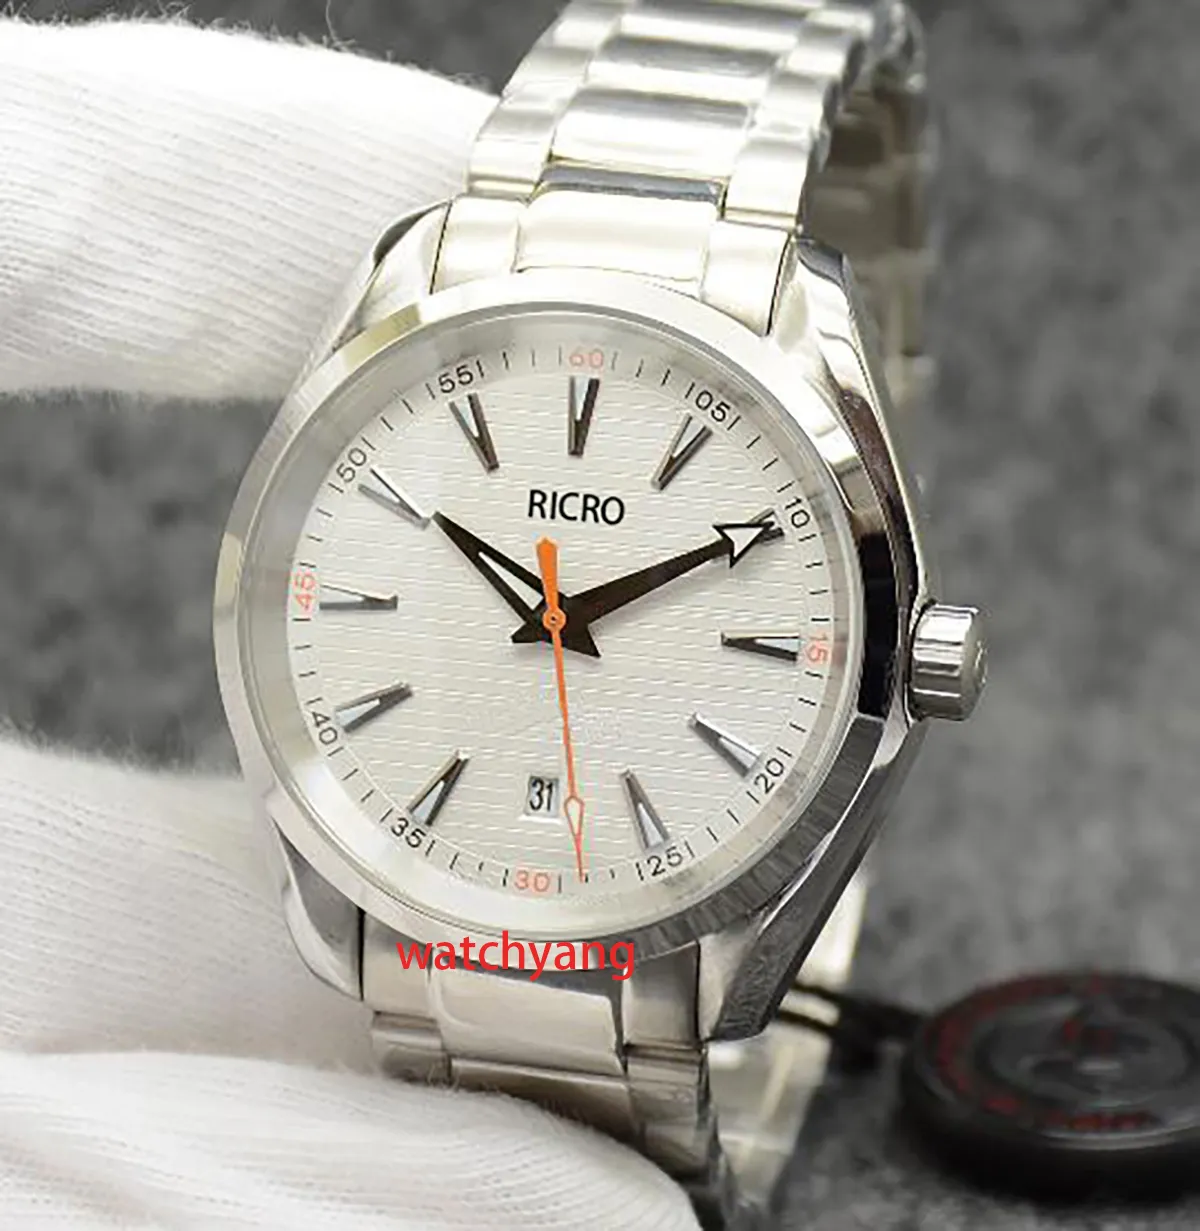 Мужские часы Высококачественные мужские дизайнерские часы 41 мм из нержавеющей стали со складной пряжкой, автоматические механические часы, спортивные часы 007